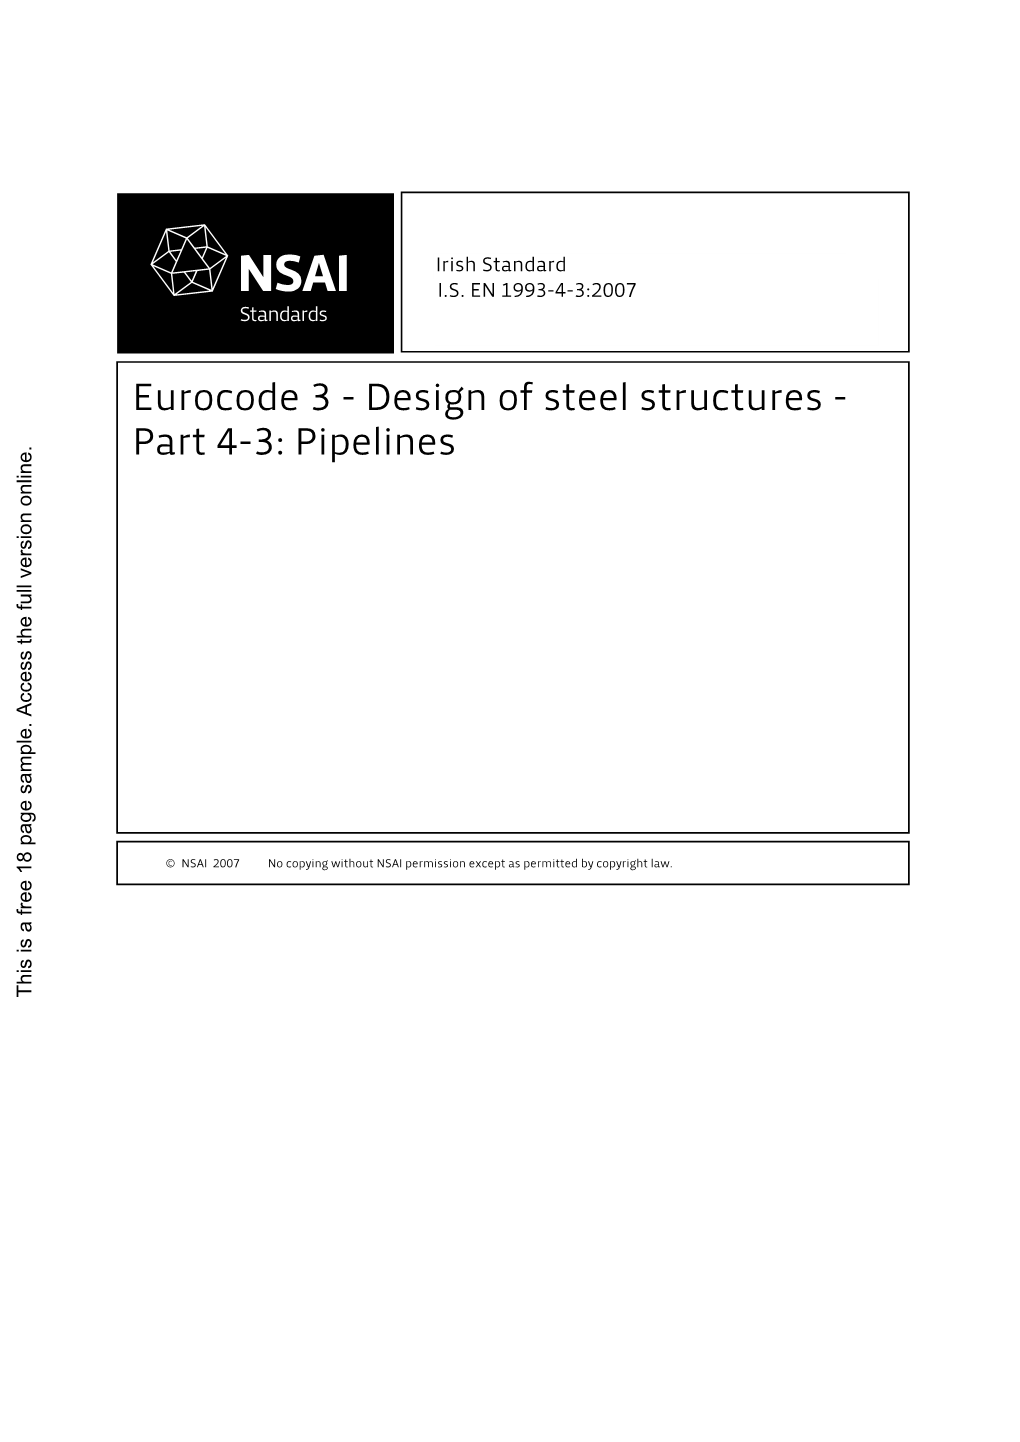 Eurocode 3 - Design of Steel Structures - Part 4-3: Pipelines